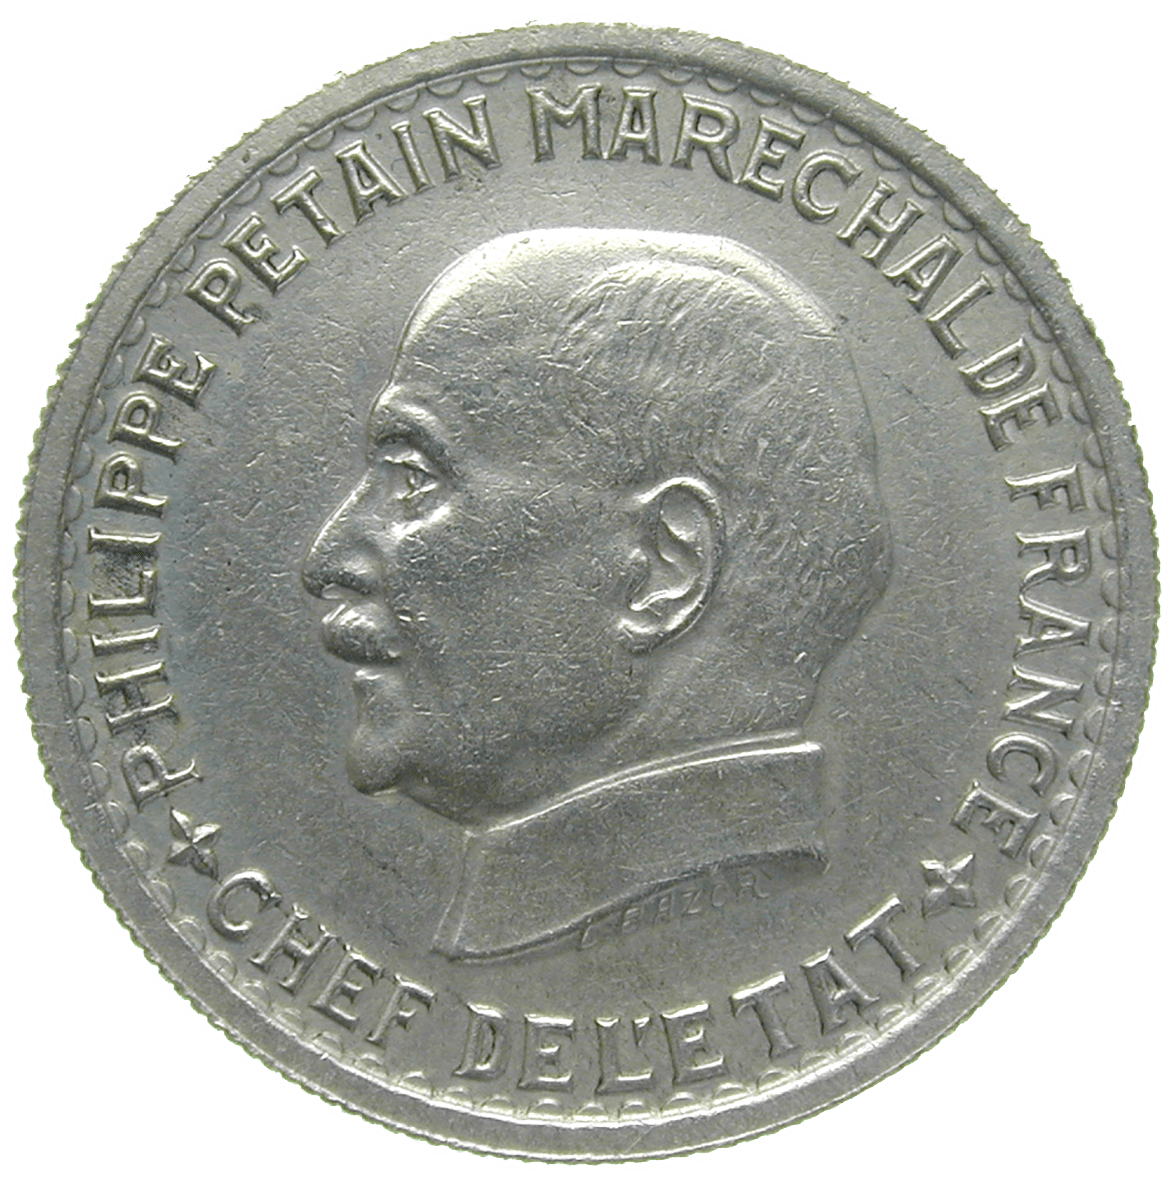 Frankreich, Etat Français, Philippe Pétain, 5 Francs 1941 (obverse)